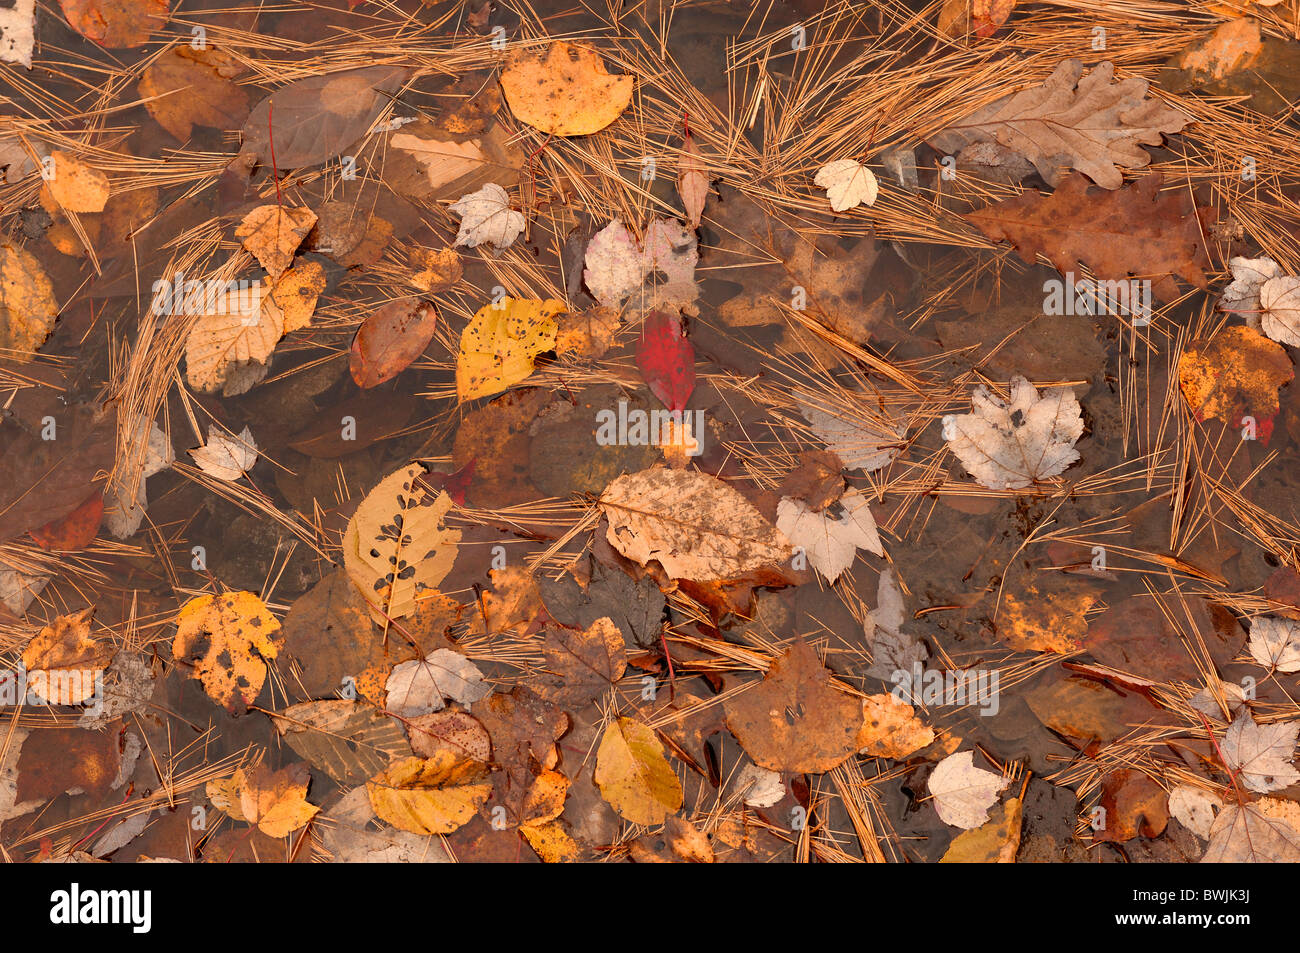 La nature de l'eau étang aiguilles feuilles feuilles d'automne automne broches Walden Pond State Reservation Indian s Banque D'Images